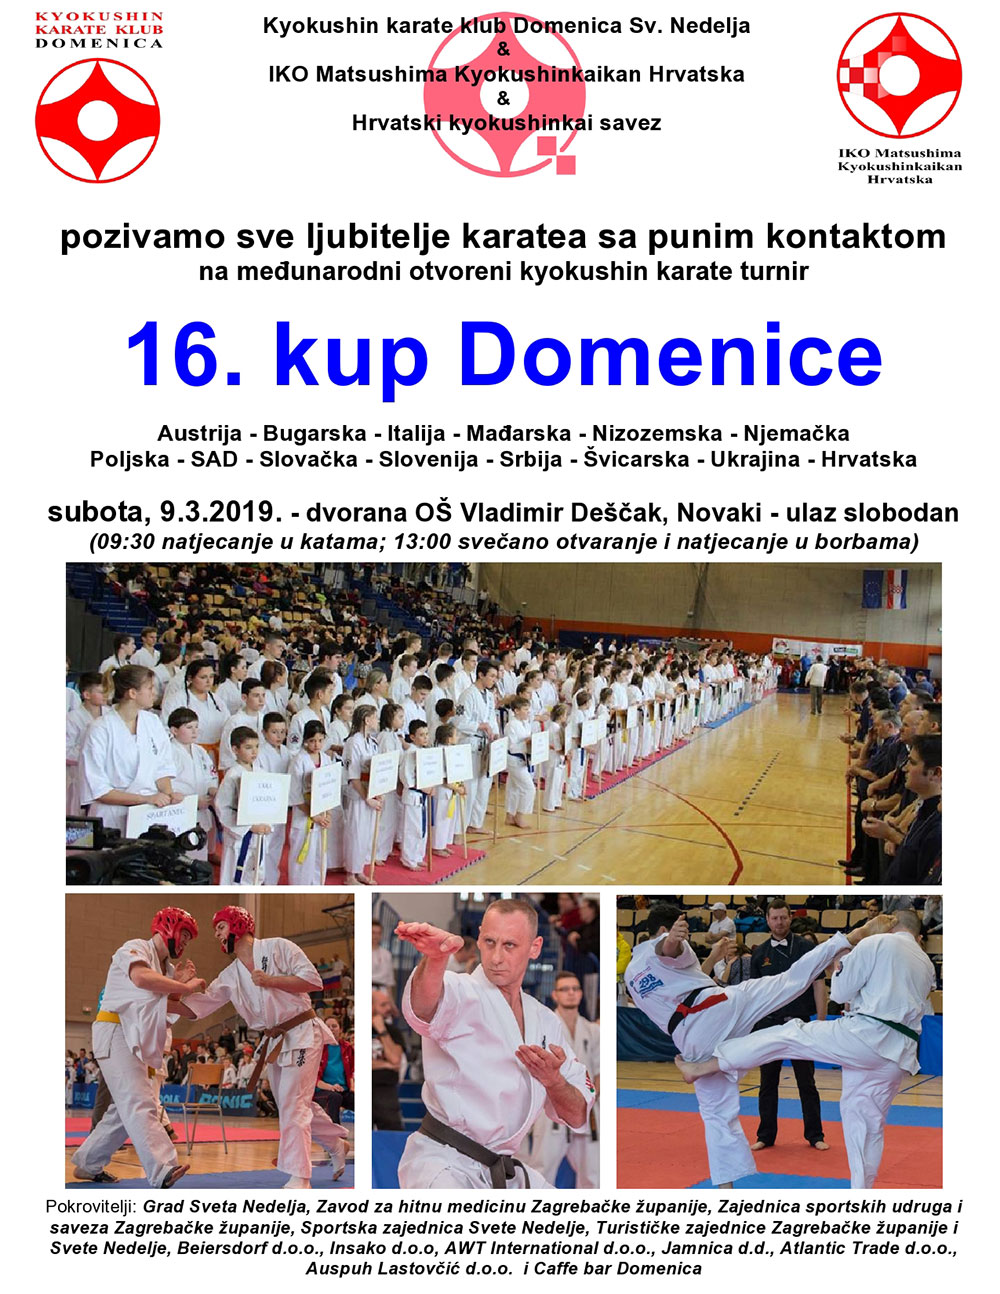 Najava vrhunsko karate turnira za ljubitelje karatea s punim kontaktom